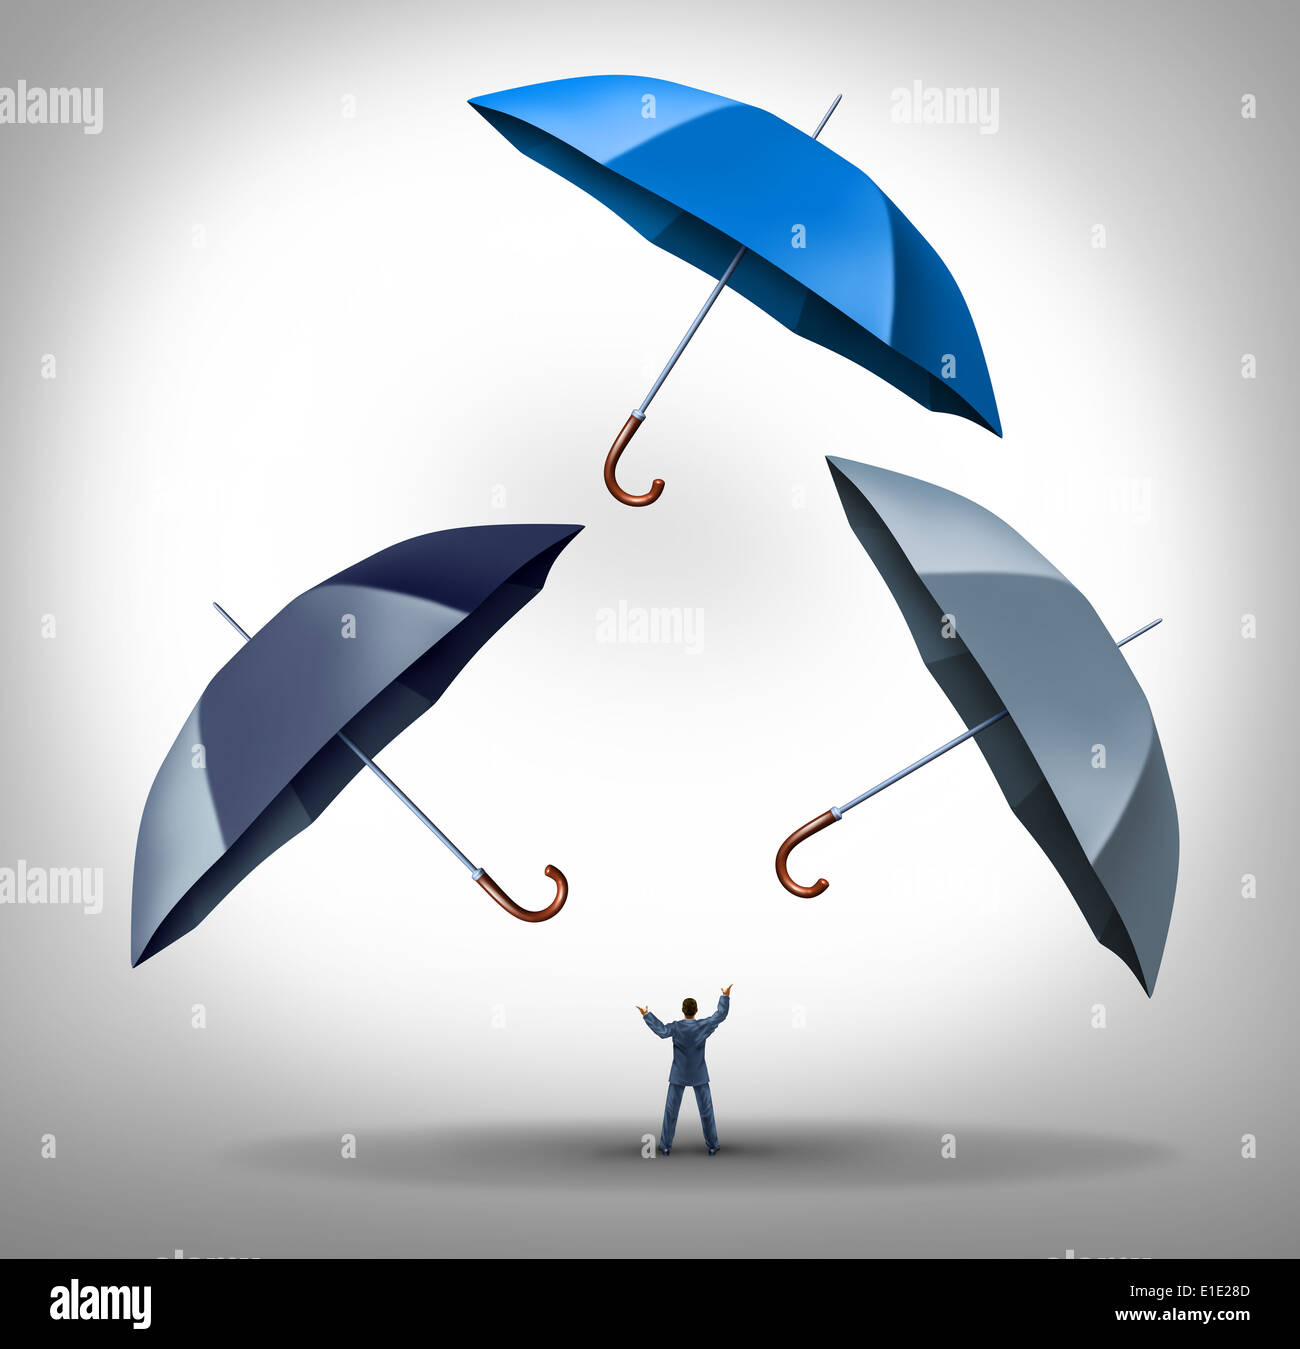 Security Manager Business-Konzept als Geschäftsmann jonglieren drei Regenschirme als Erfolg Metapher für Risikomanagement und Geldanlage durch Kompetenz, planen eine langfristige Strategie zu schützen. Stockfoto